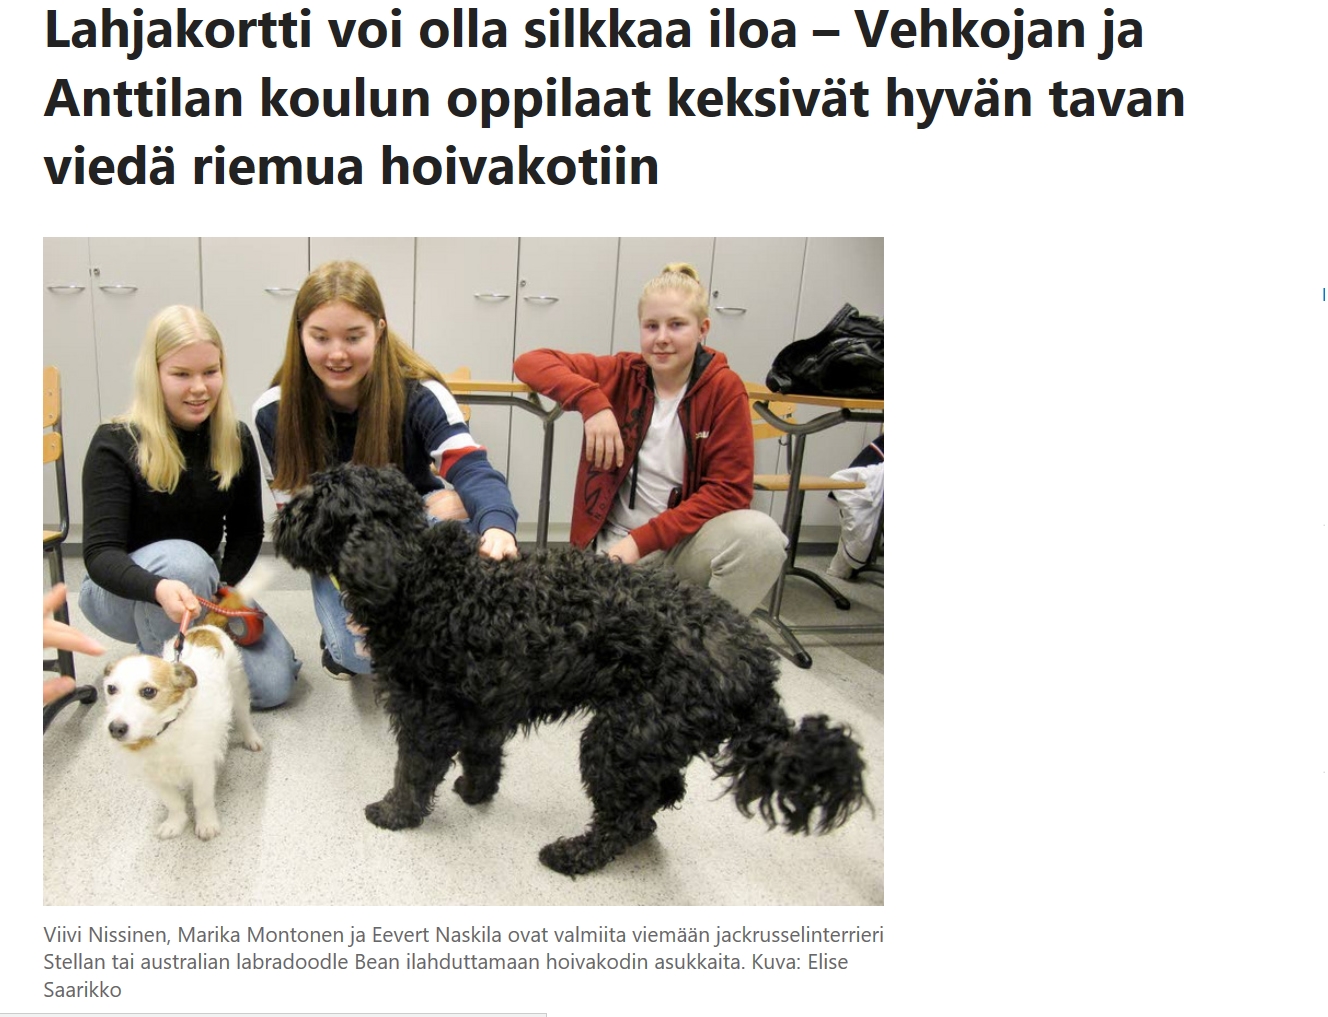 Kuvassa koira ja oppilaita sekä teksti: Lahjakortti voi olla silkkaa iloa - Vehkojan ja Anttilan koulun oppilaat keksivät hyvän tavan viedä riemua hoivakotiin